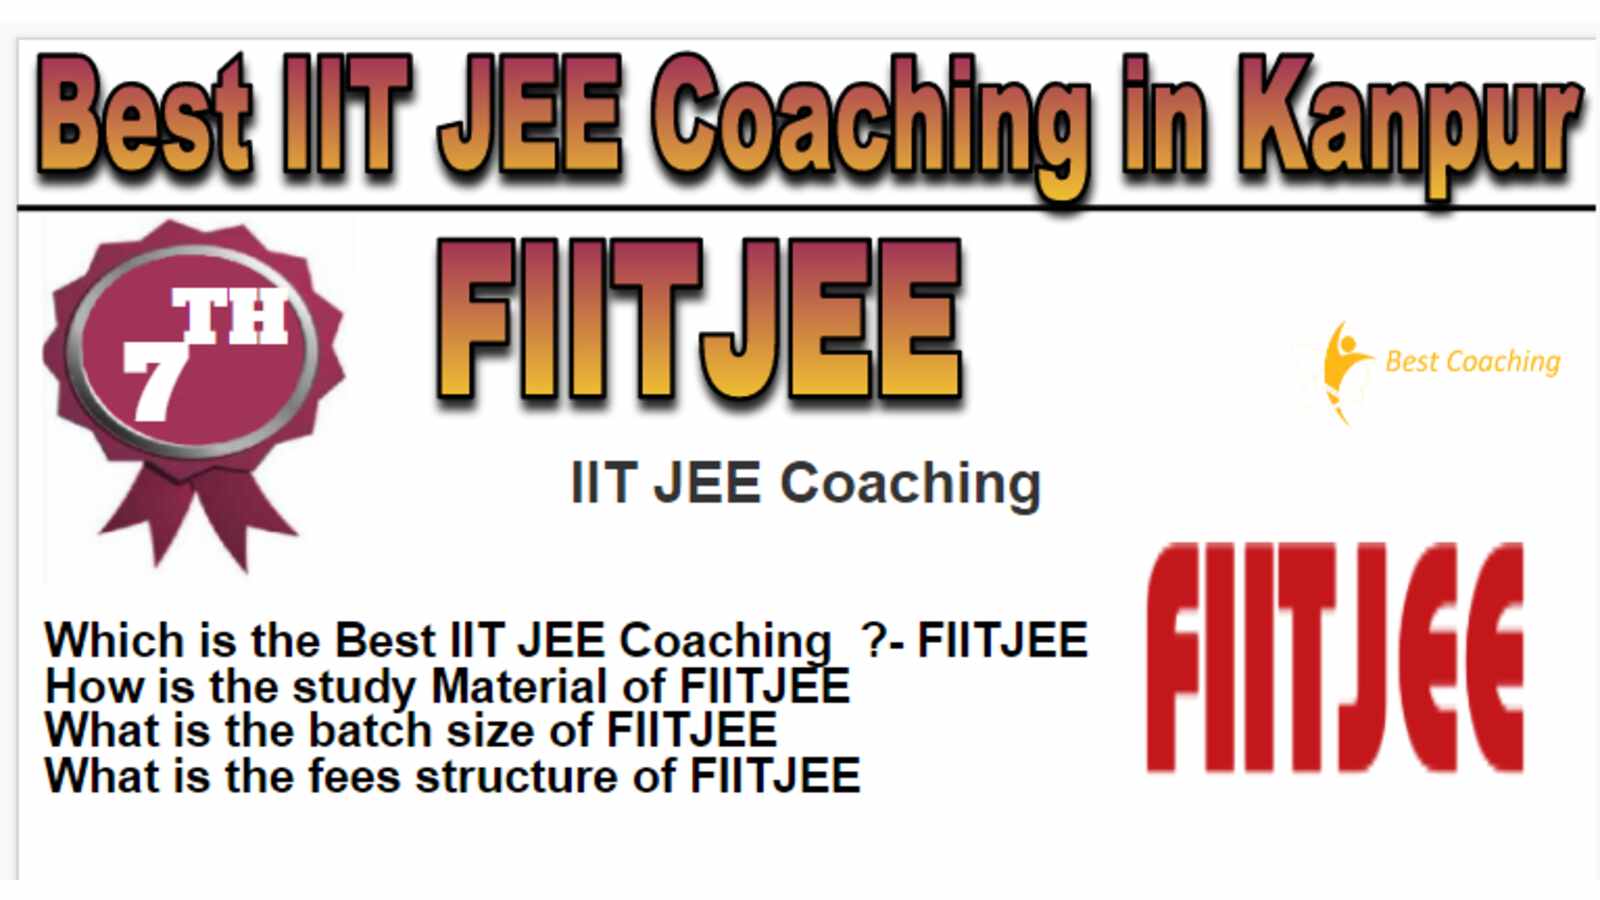 Rank 7 Best IIT JEE Coaching in Kanpur